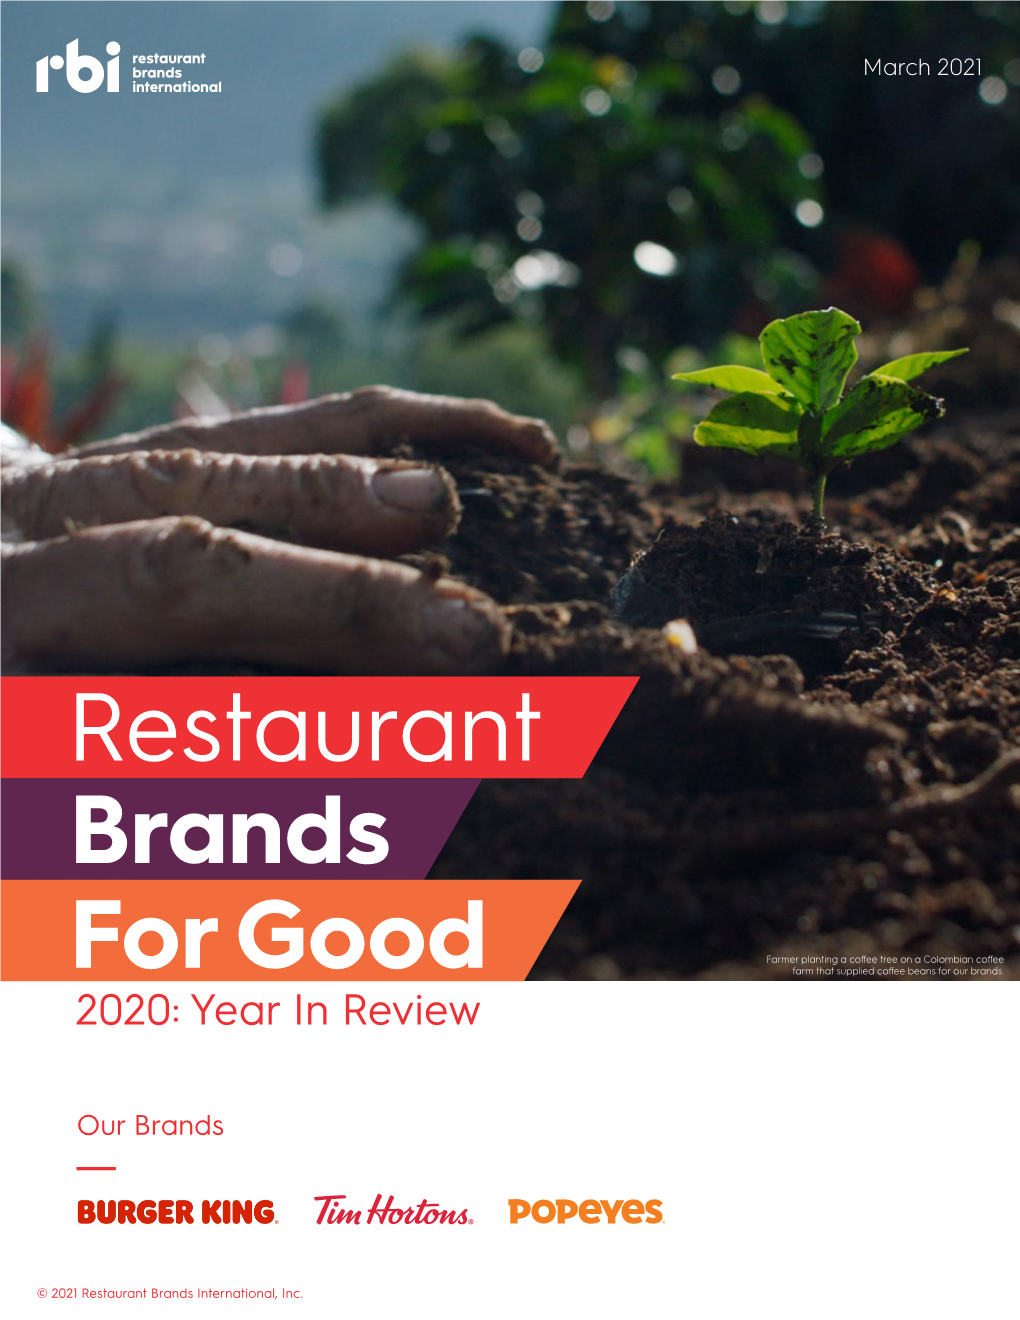 Restaurant Brands for Good